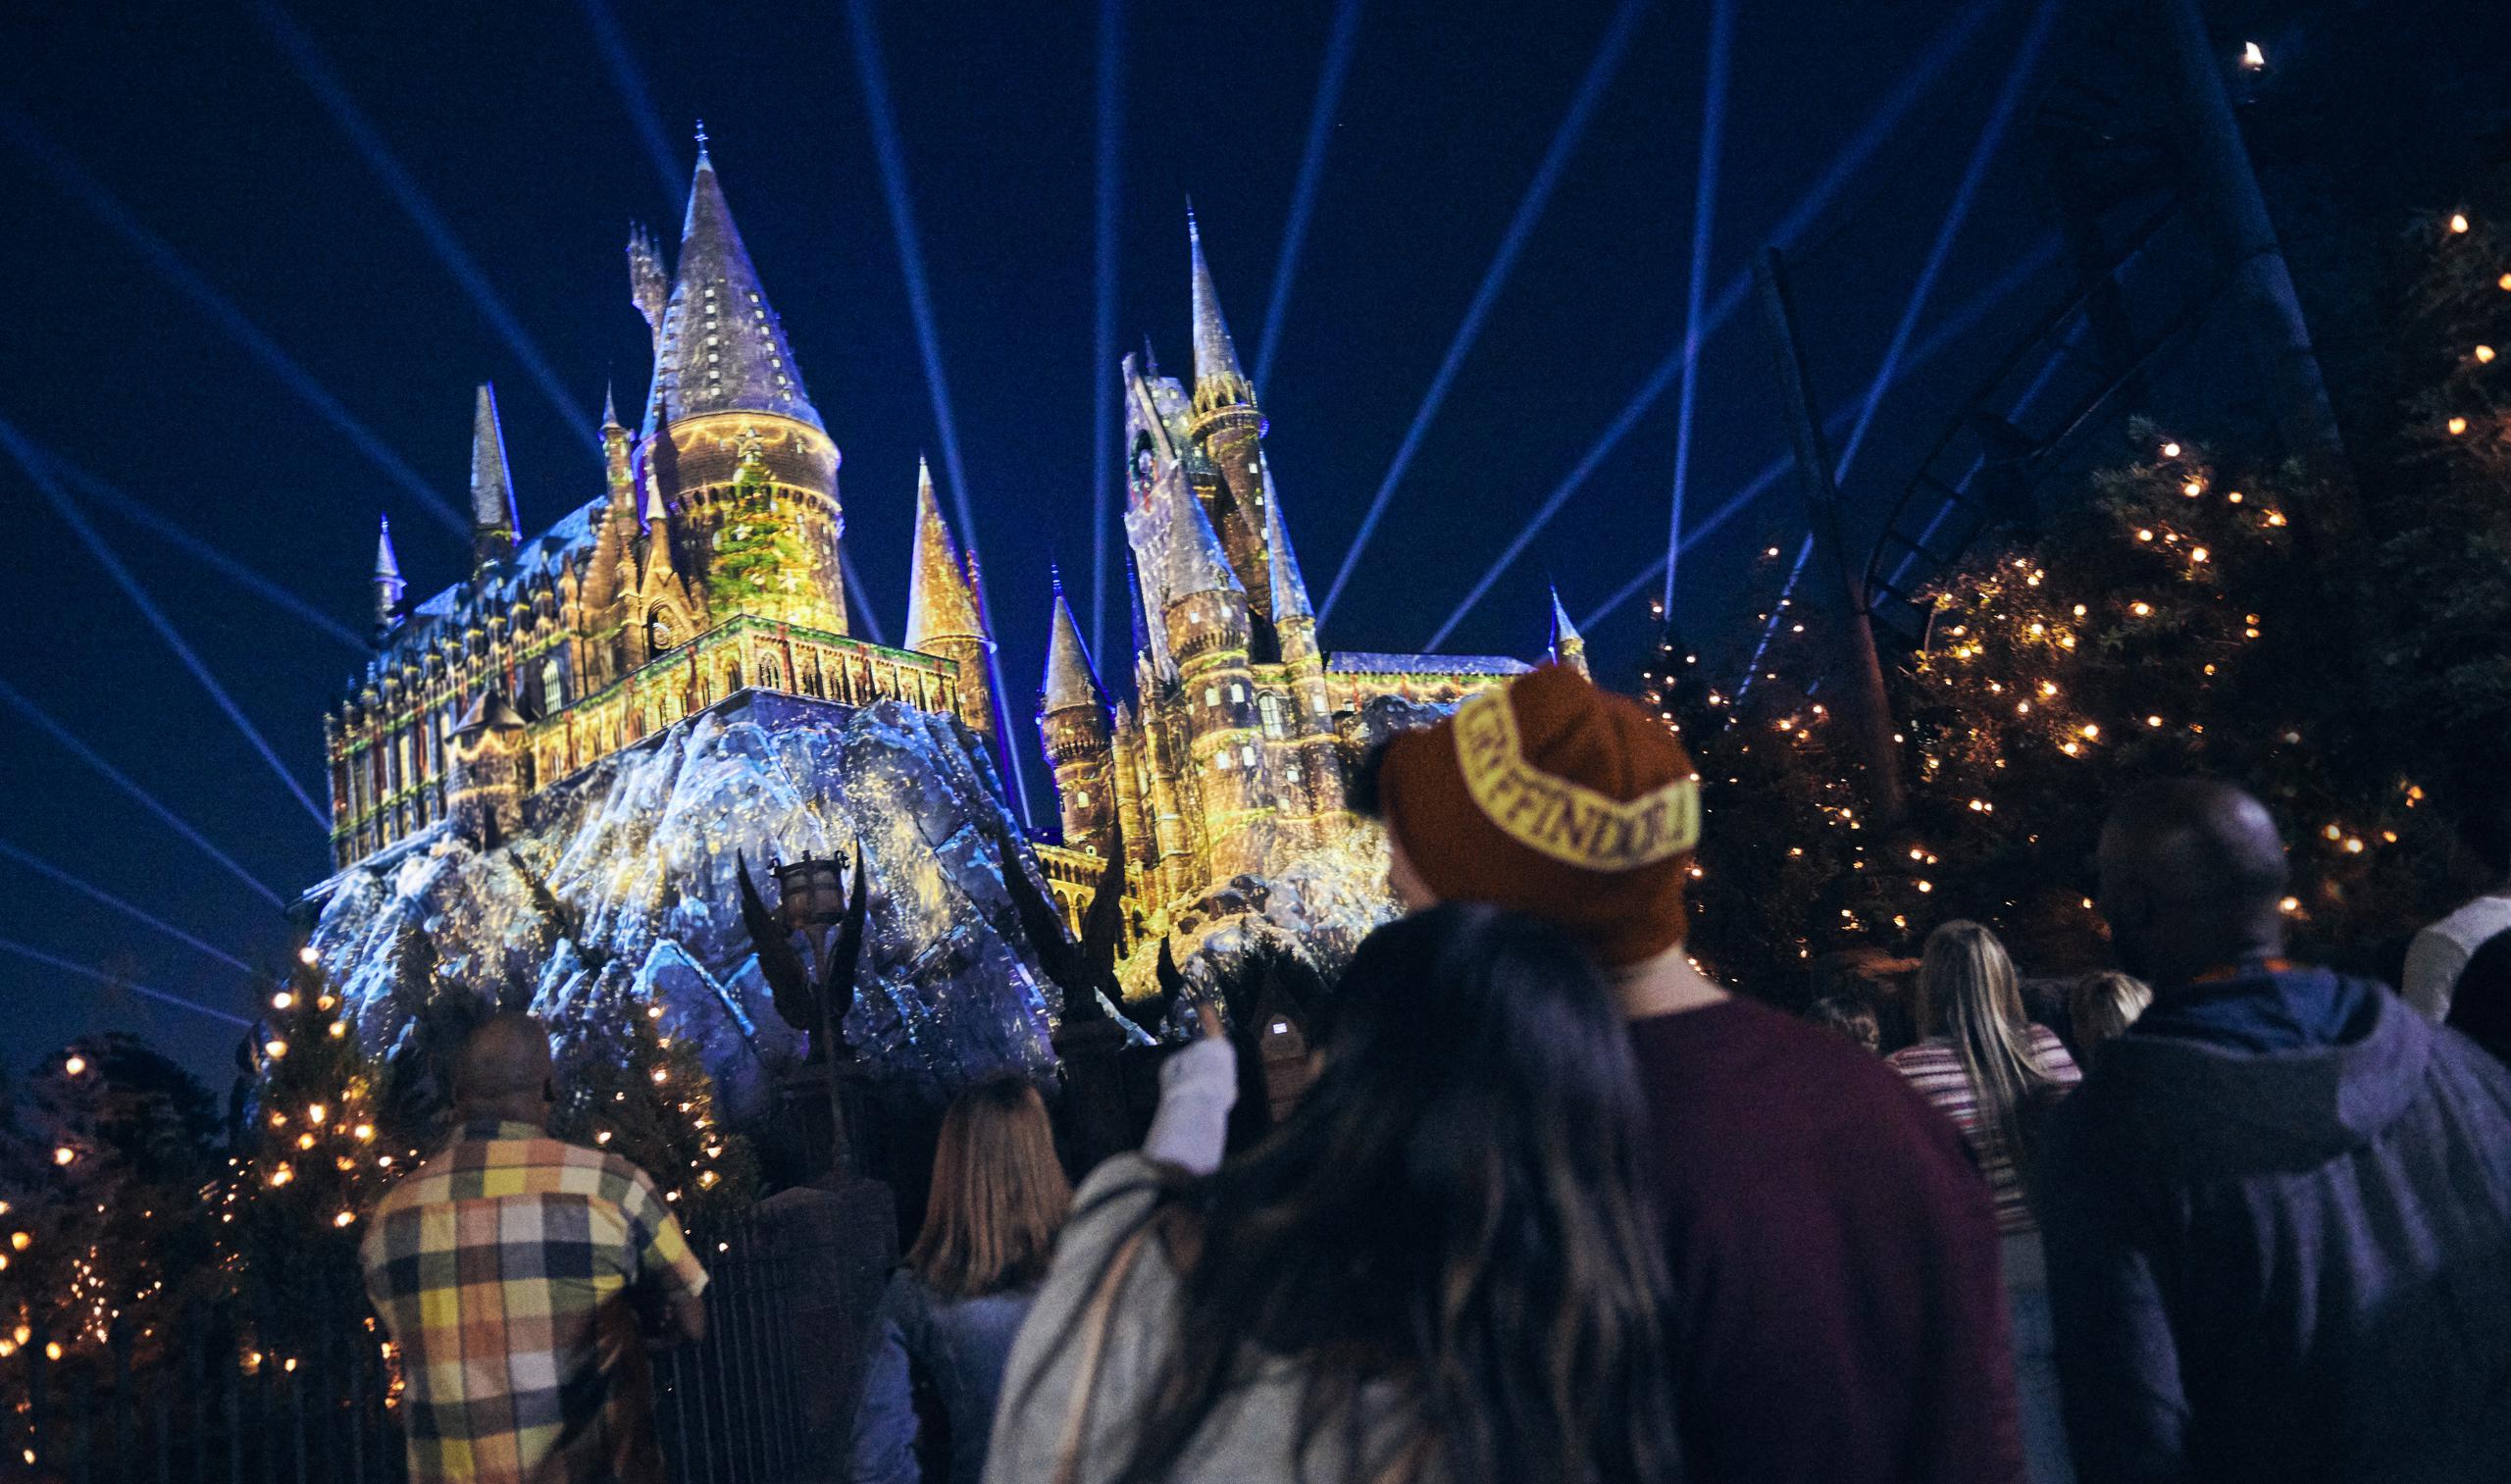 Fotografía cedida por Universal Orlando Resort del espectáculo del castillo de Hogwarts del espectáculo Christmas in The Wizarding World of Harry Potter en los parques temáticos.